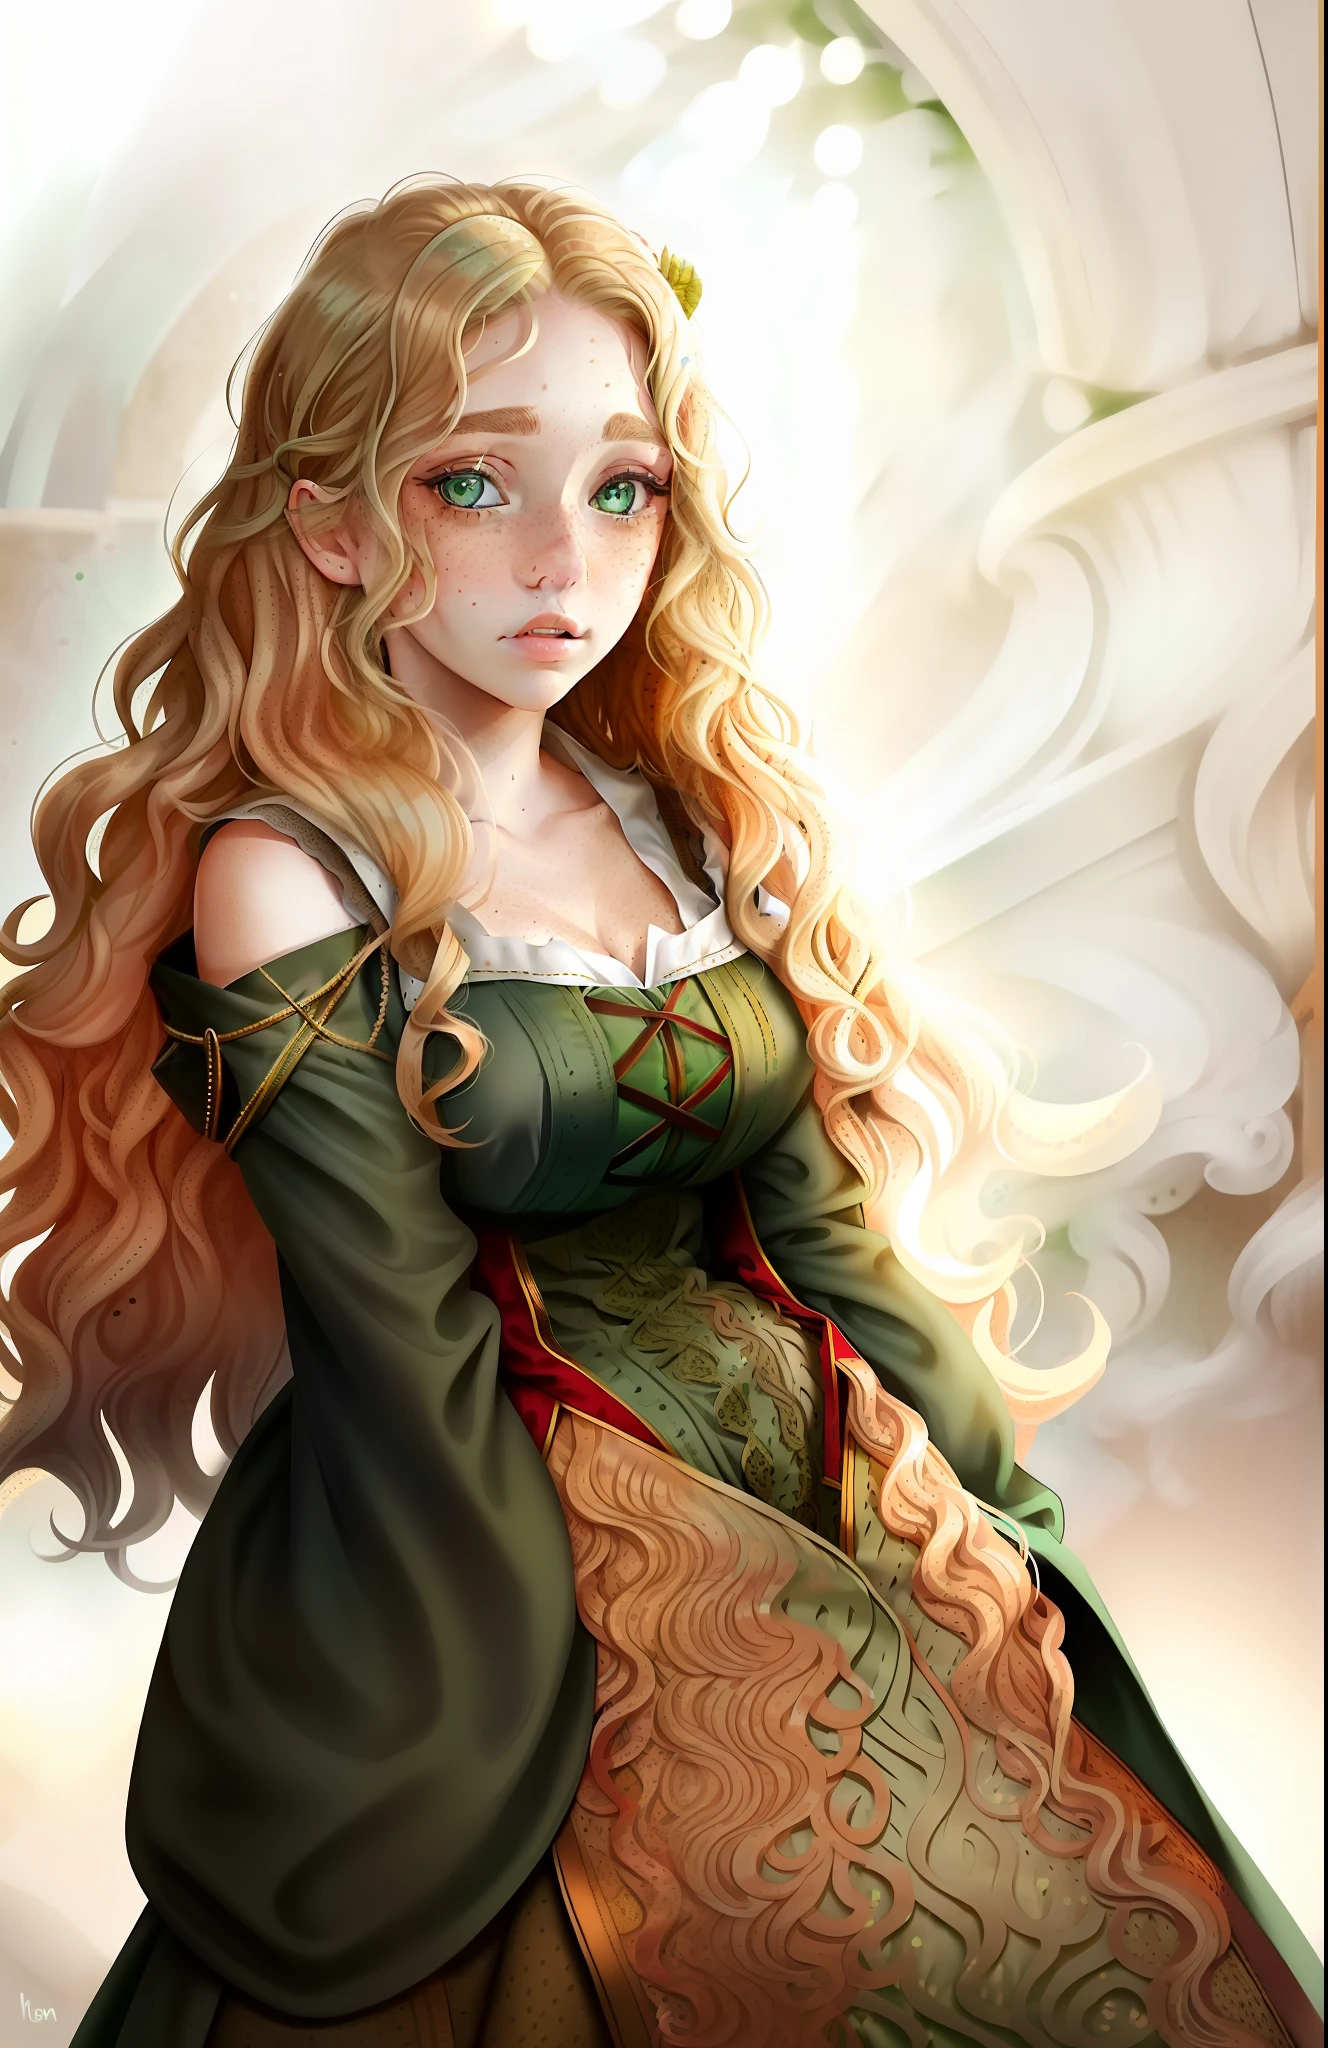 ((женщина)), ((волнистые светлые волосы)), ((средневековое платье)), (((зеленые глаза)), ((веснушки на лице))